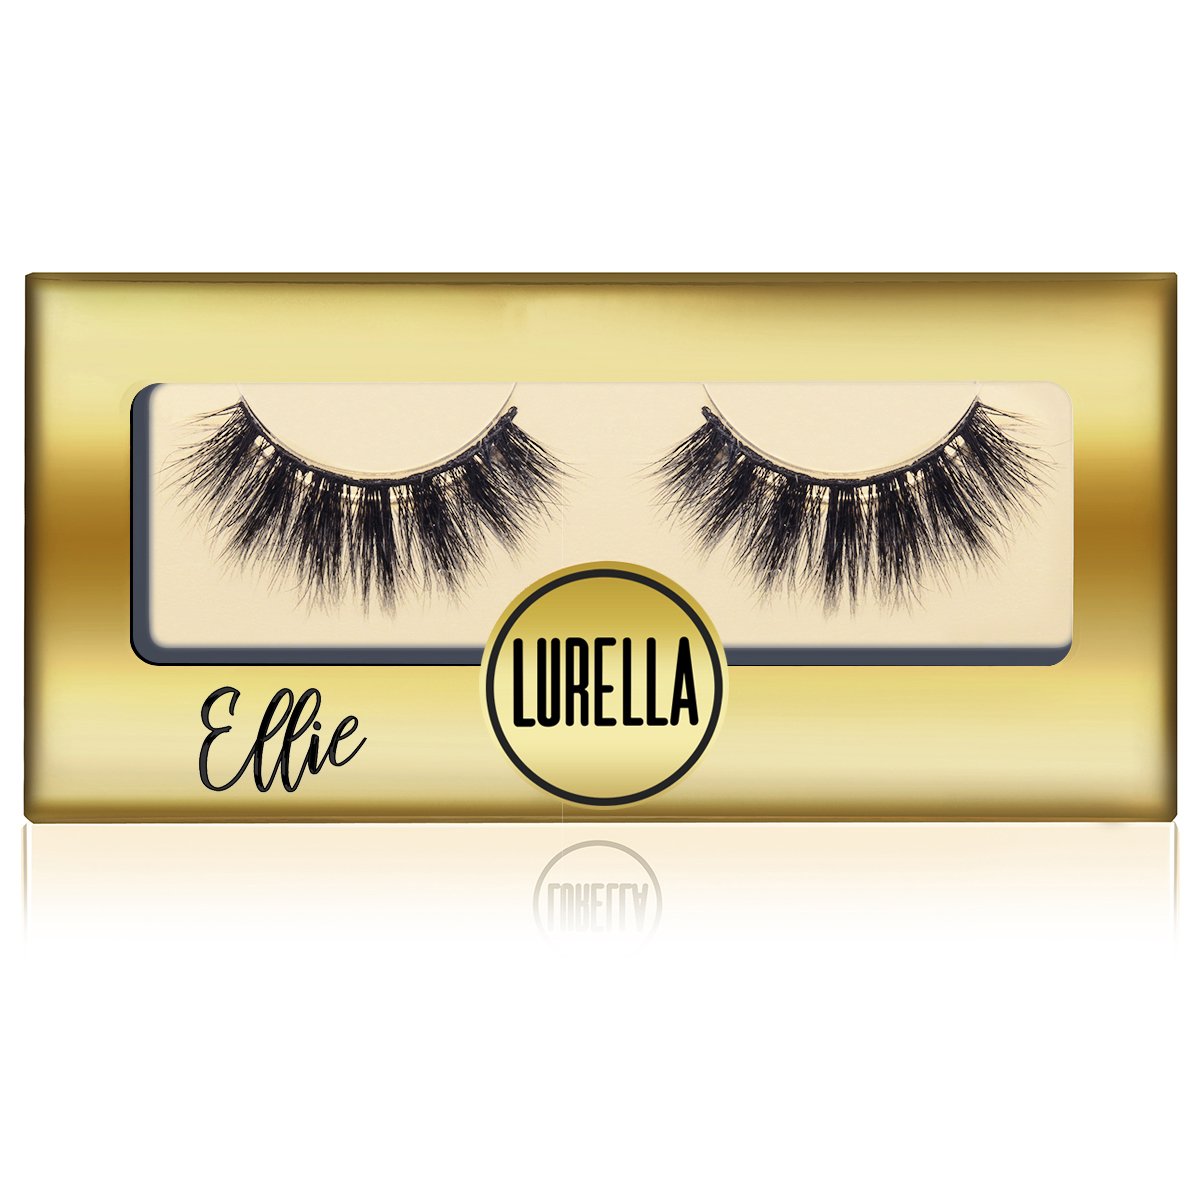 Ellie - Lurella Cosmetics